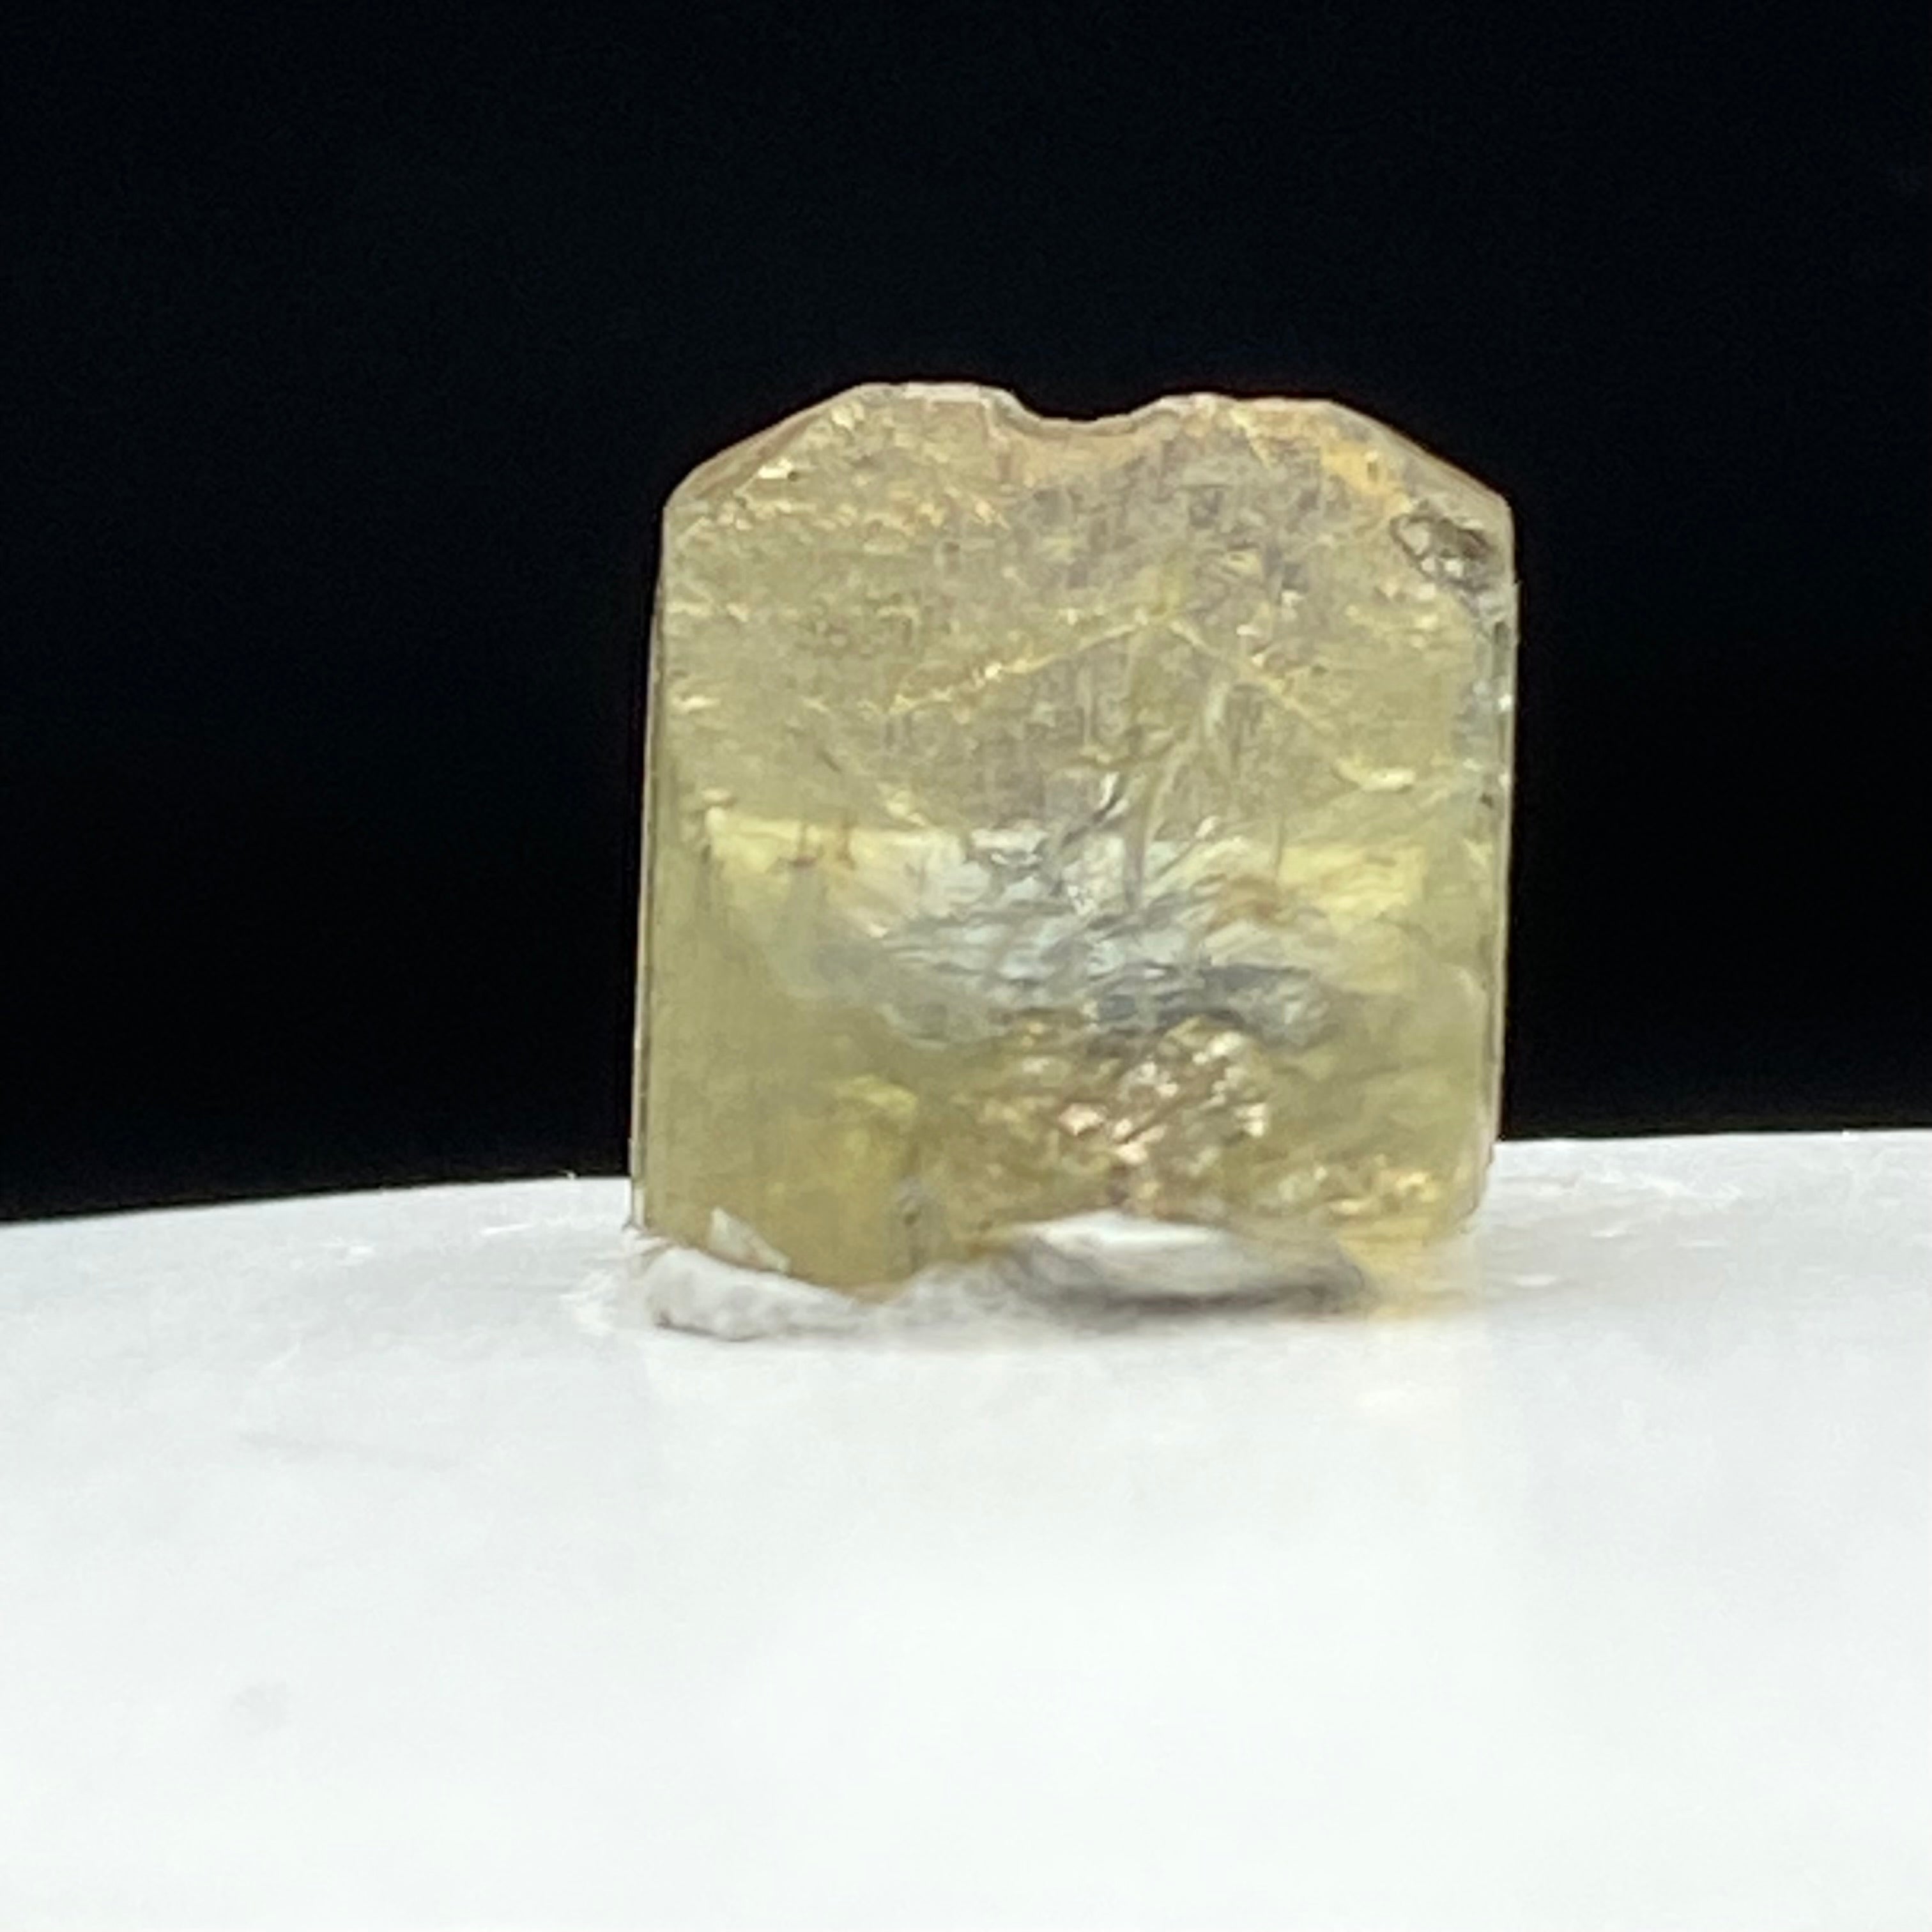 Real Tanzanite Crystal - 054